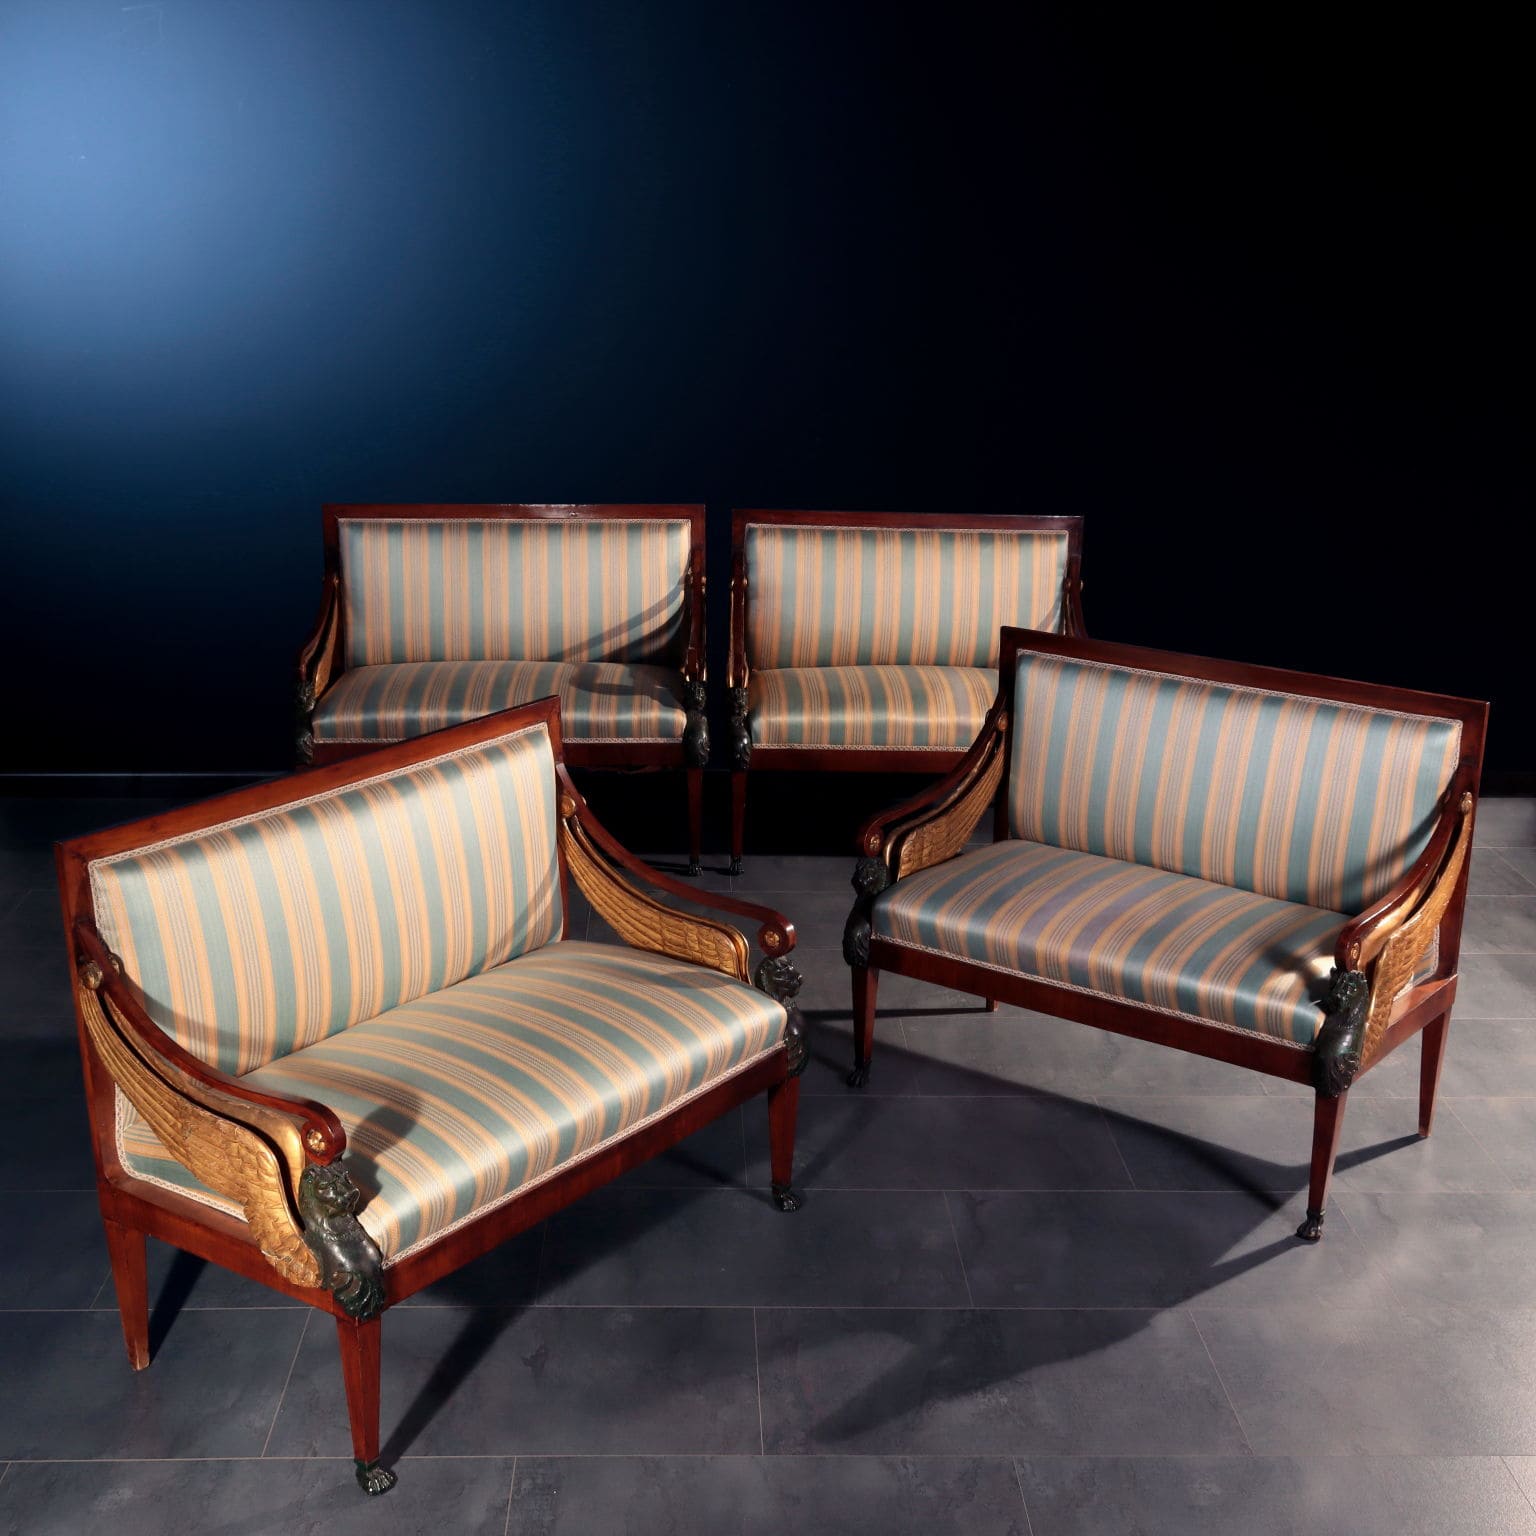 Quattro divanetti, lombardo-veneto, primo quarto XIX secolo